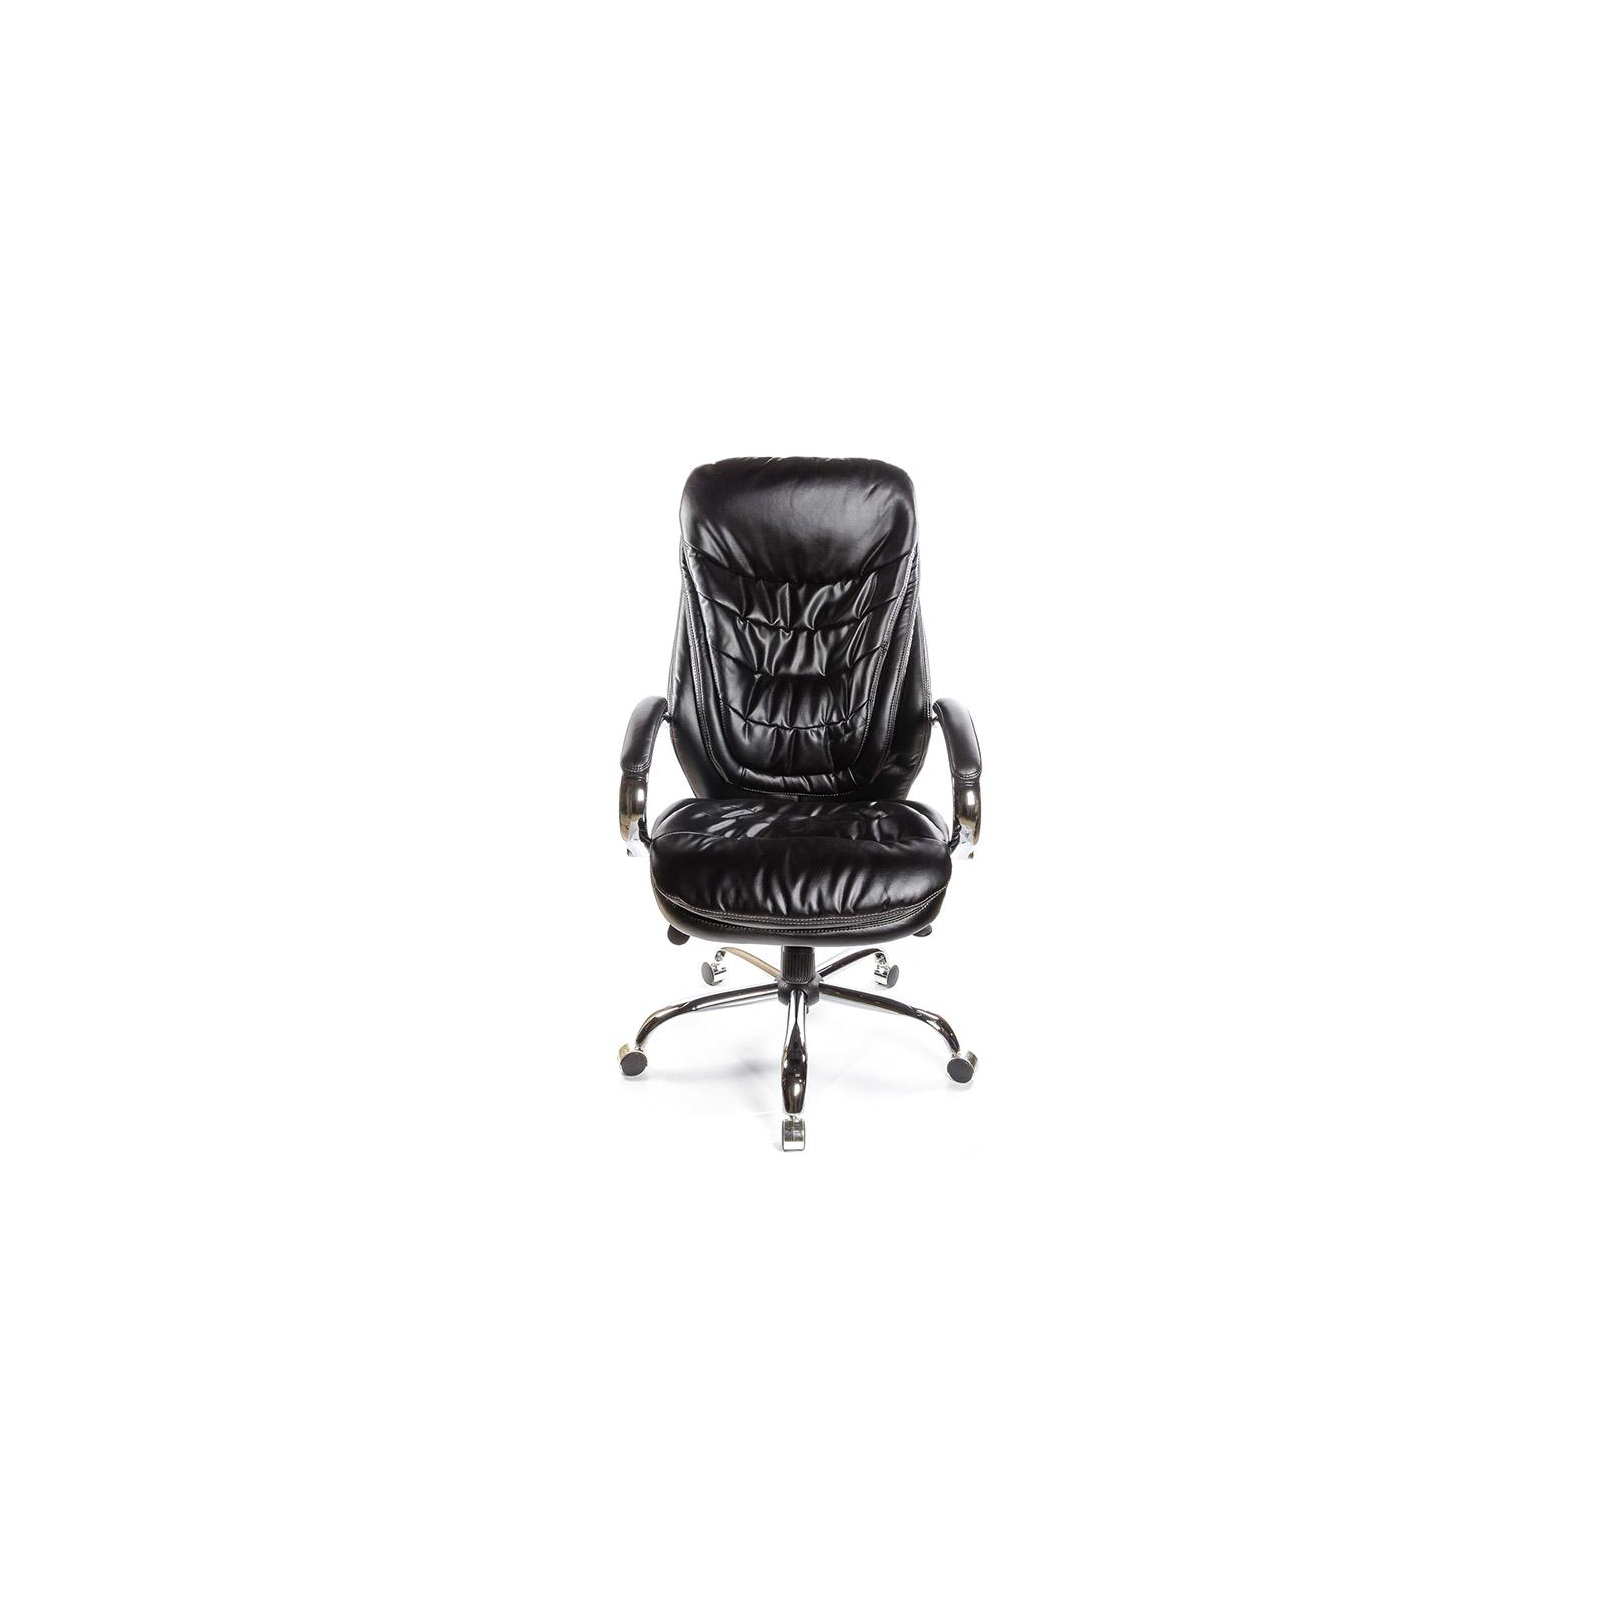 Офисное кресло Аклас Валенсия Soft CH MB Белое (07392) изображение 2